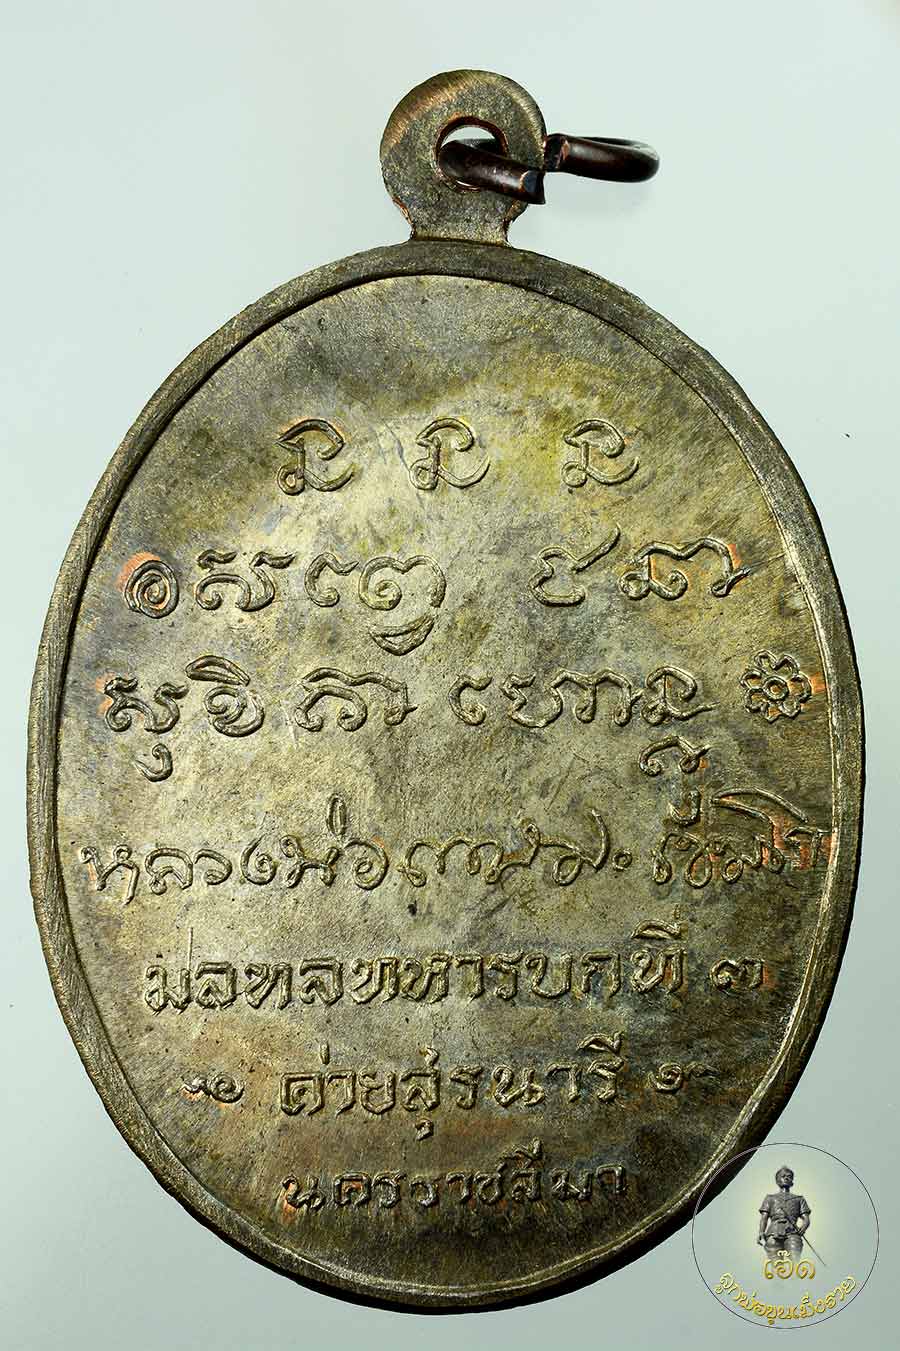 เหรียญกองพันโคราช นวะโลหะ ปี พ.ศ. ๒๕๑๘ หลวงพ่อเกษม เขมโก สุส านไตรลักษณ์